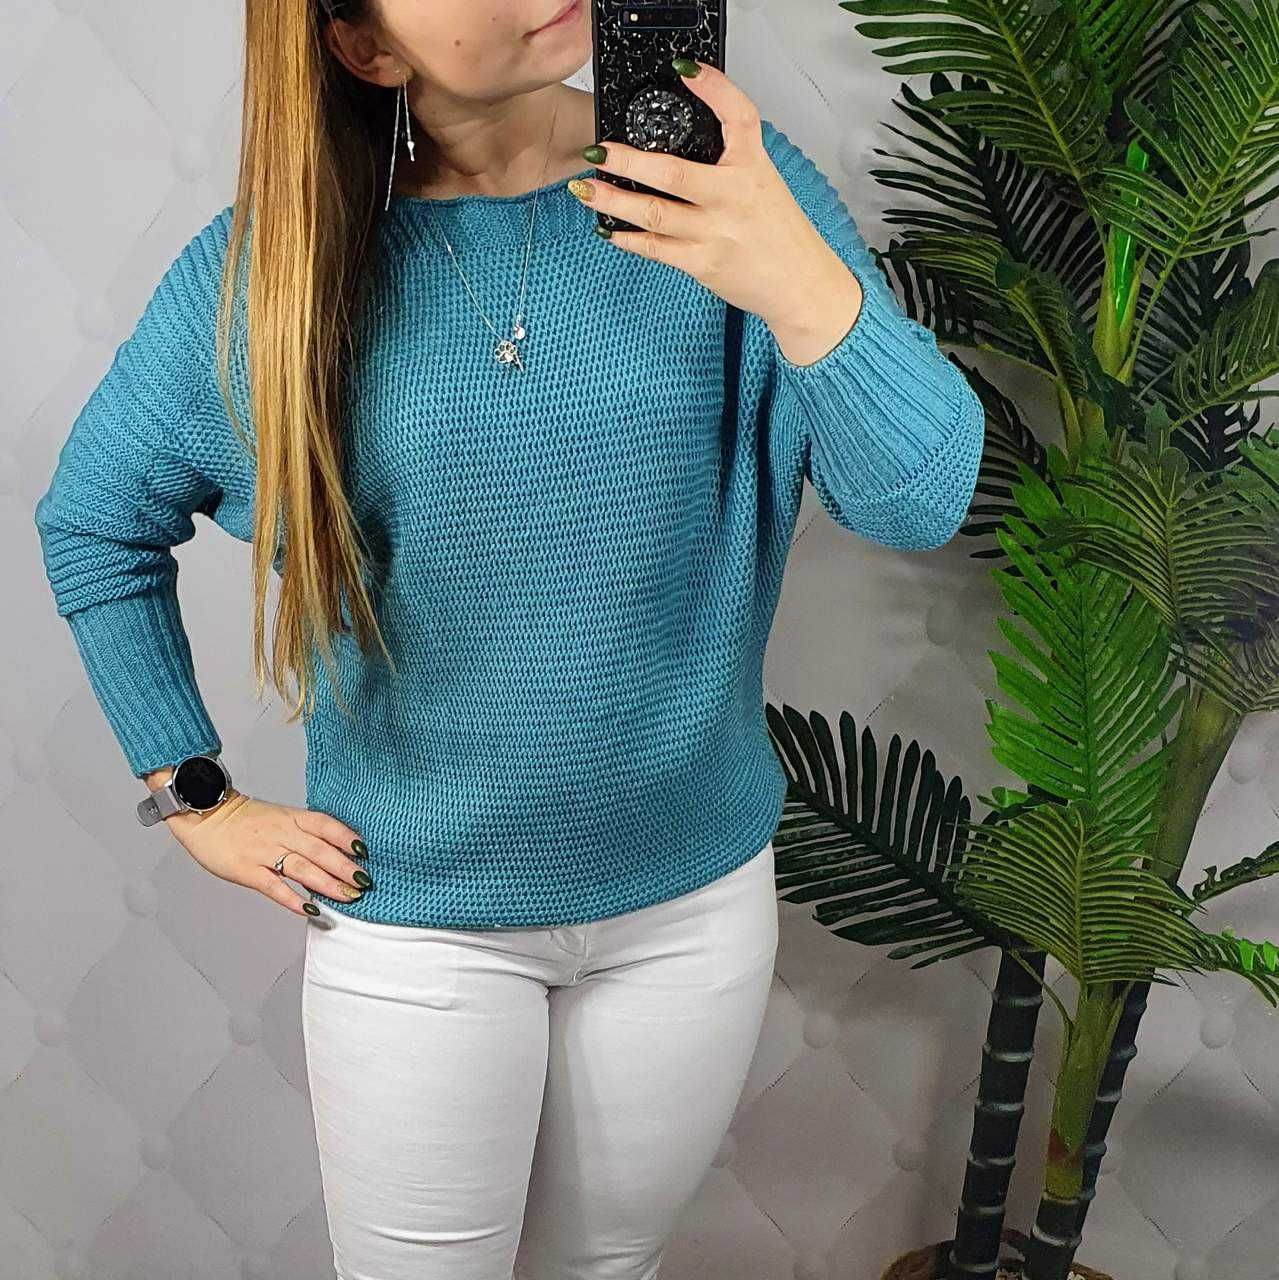 Nowy sweterek błękitny akrylowy M/L